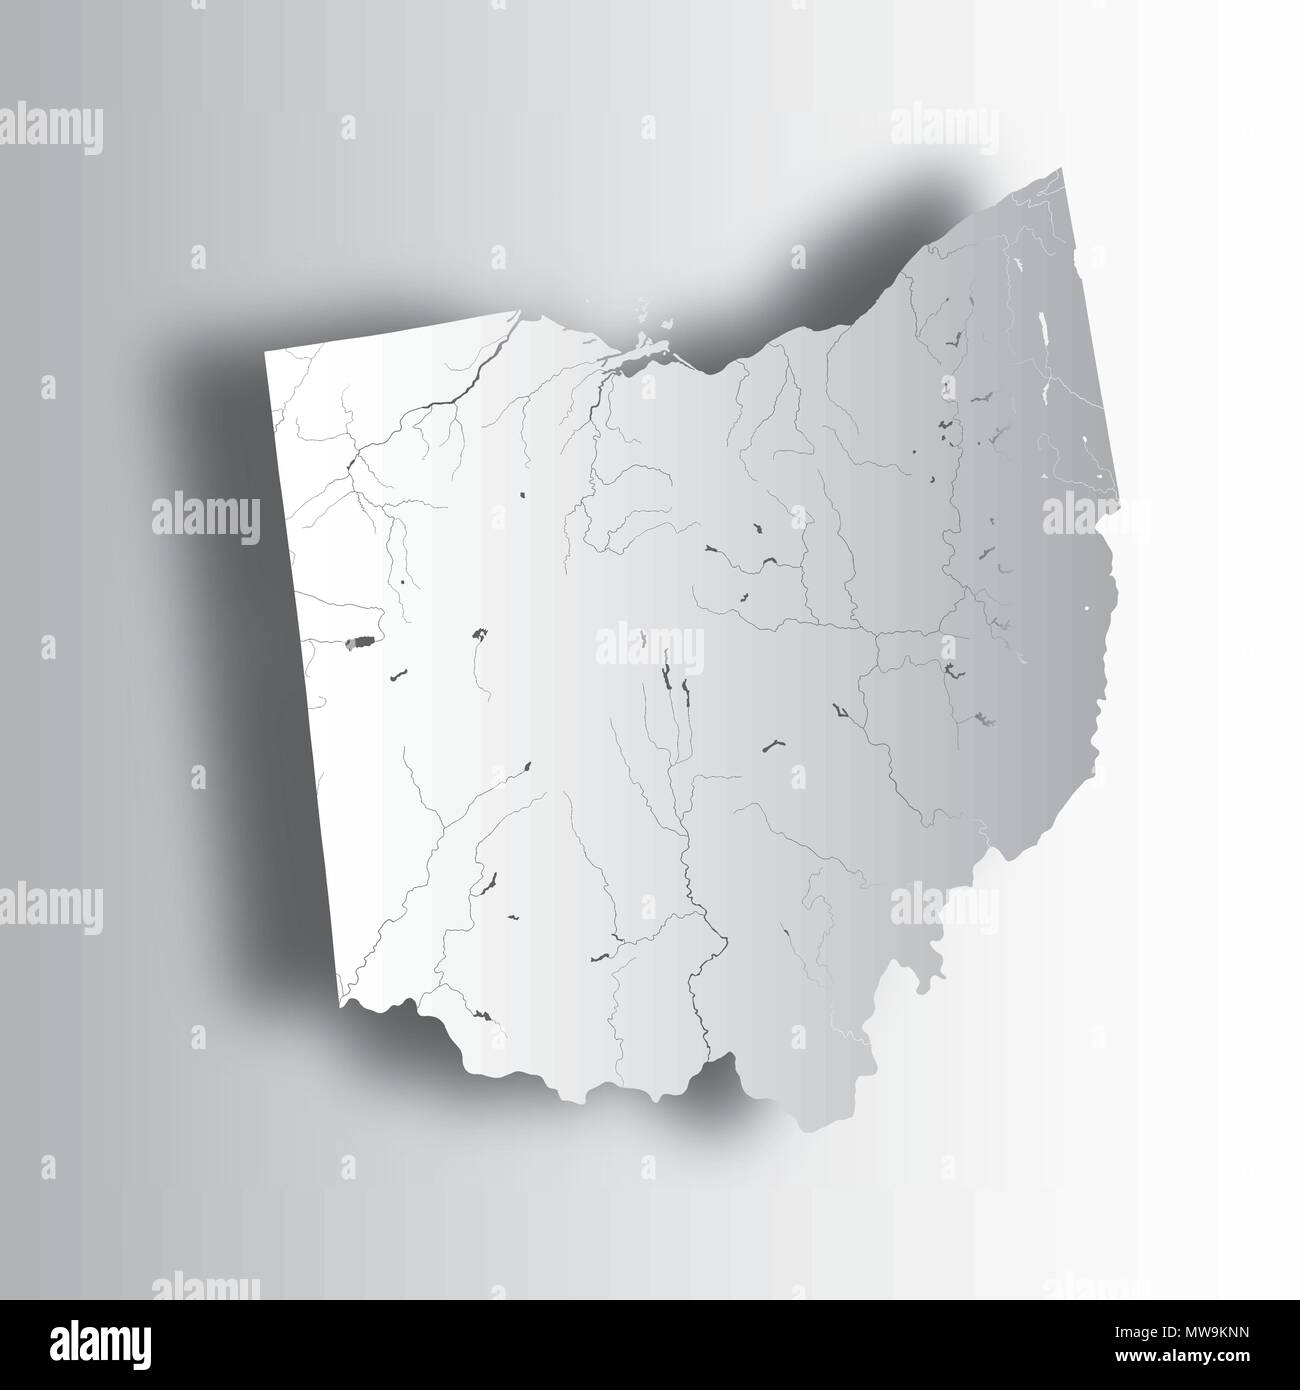 Der USA-Karte von Ohio mit Papier zu schneiden. Hand gemacht. Flüsse und Seen sind dargestellt. Bitte sehen Sie sich meine anderen Bilder von kartographischen Serie - Sie ein Stock Vektor